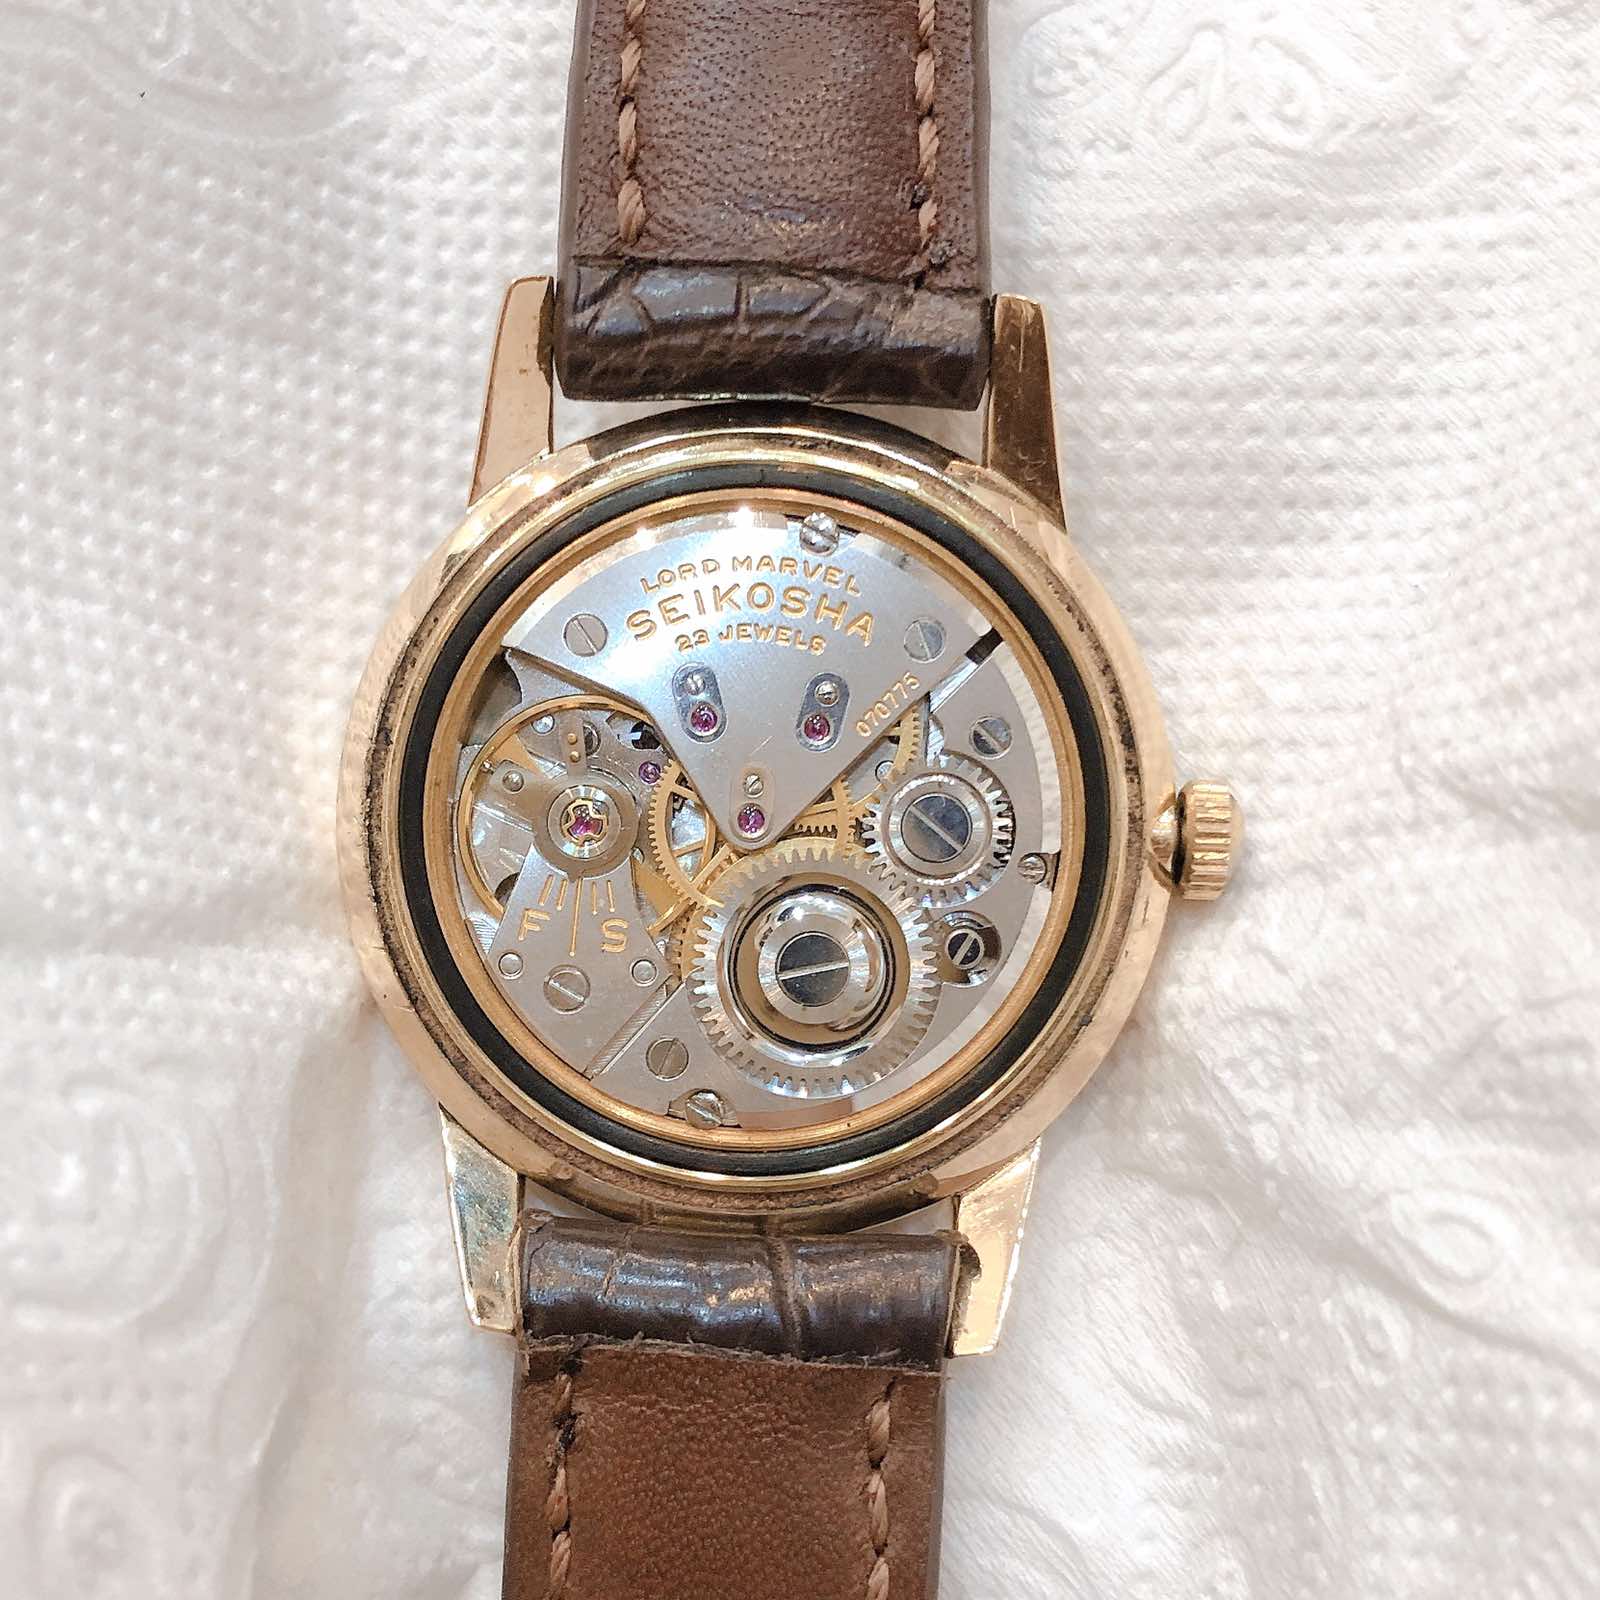 Đồng hồ cổ Seiko Lord Marvel kim đĩa lên dây 14k goldfilled chính hãng nhật bản